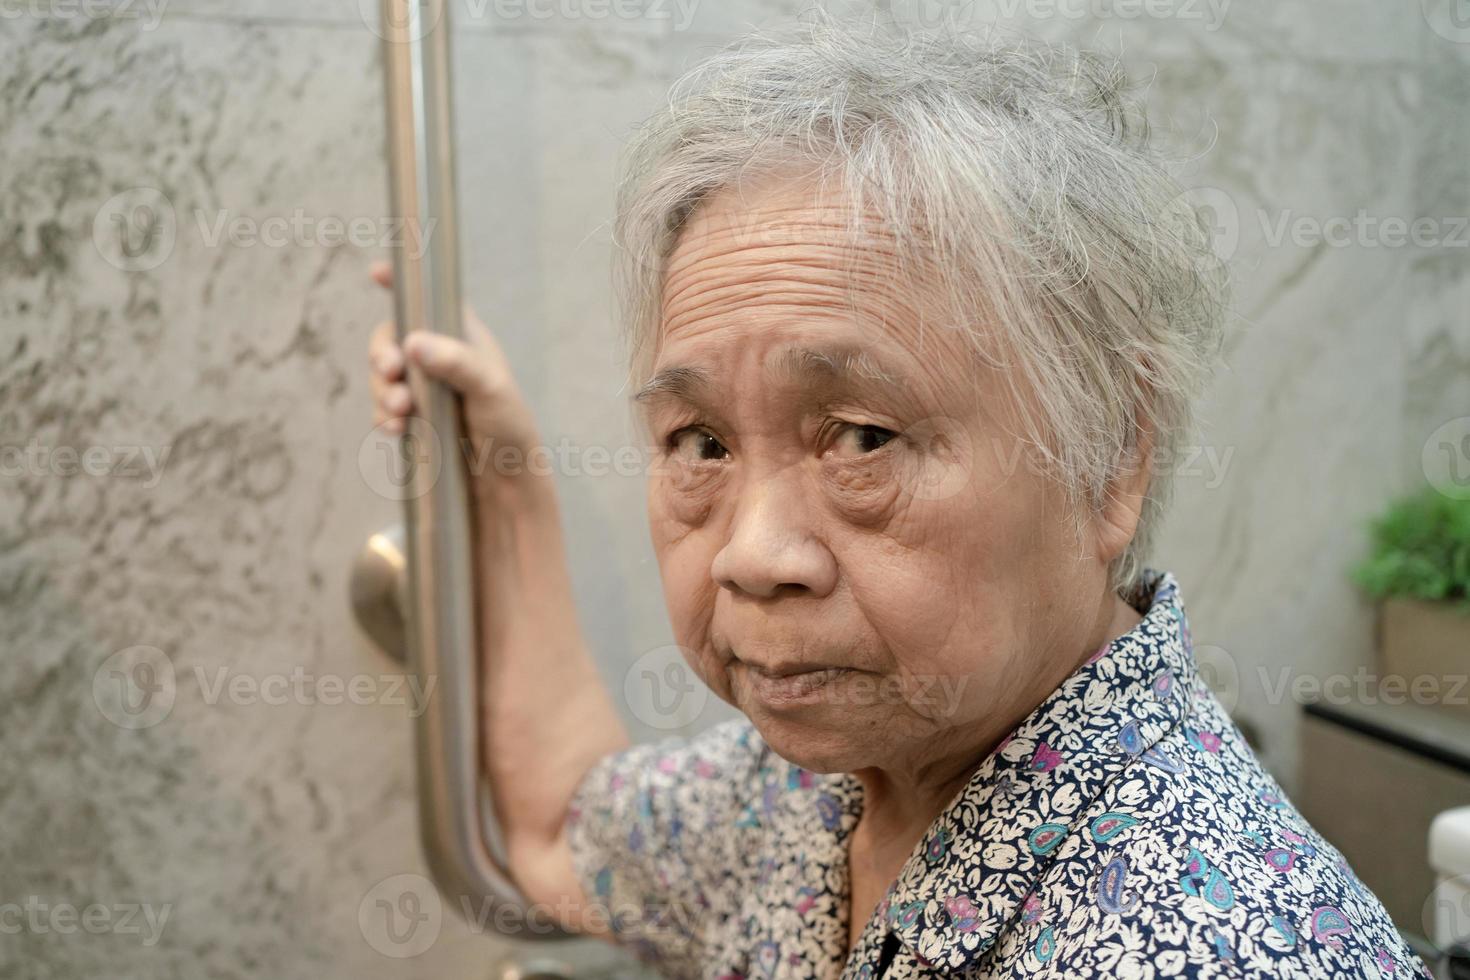 asiatische Senioren oder ältere alte Damenpatienten benutzen Toiletten-Badezimmer-Griffsicherheit in der Krankenstation, gesundes starkes medizinisches Konzept. foto